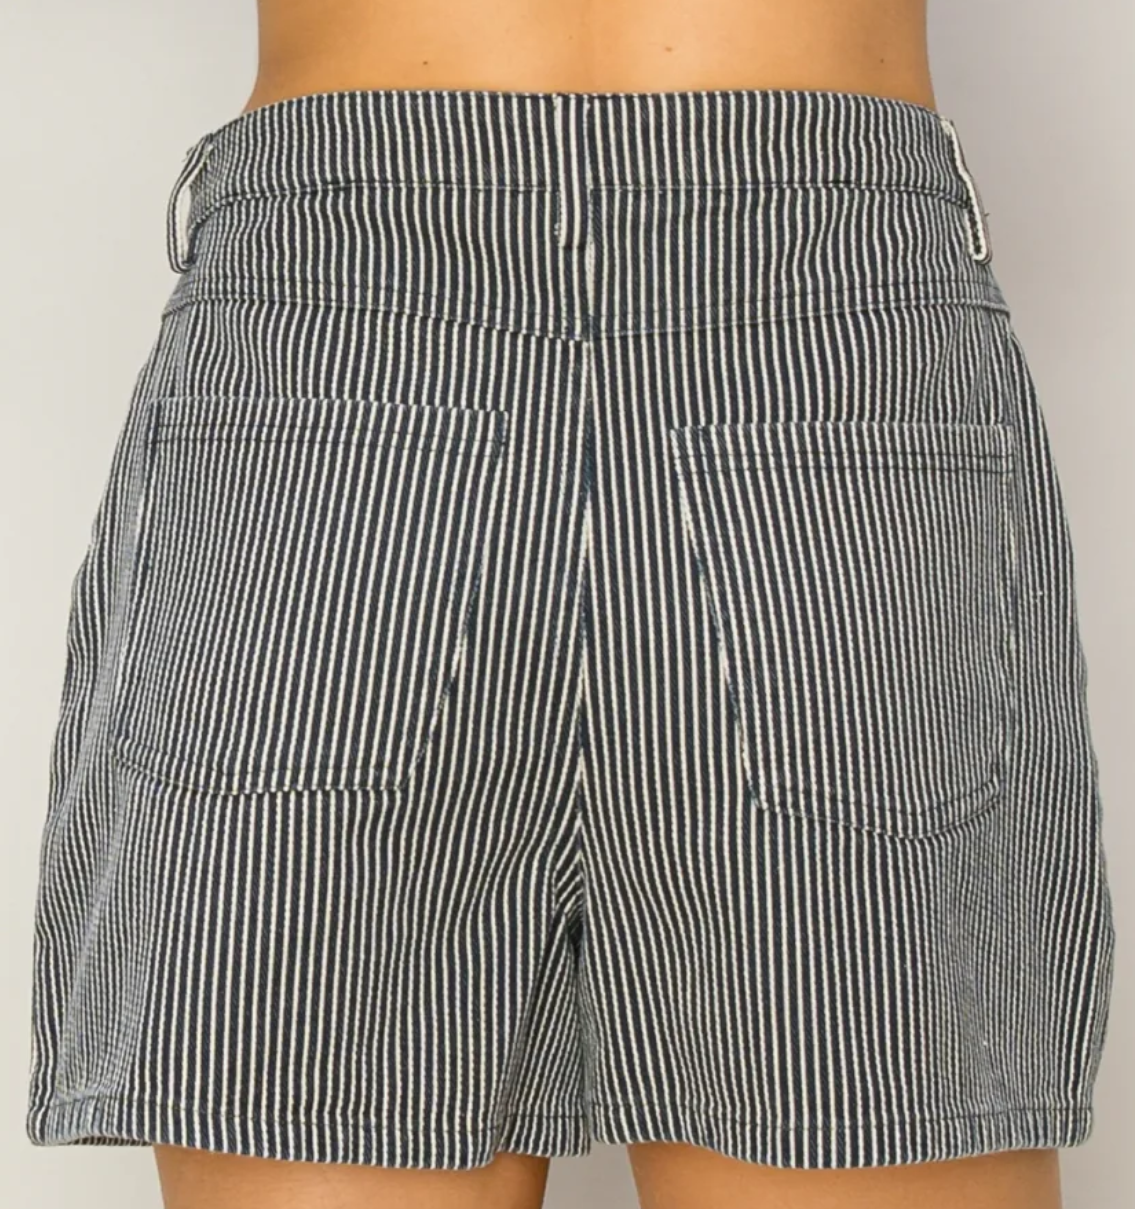 Pinstripe Navy/White Shorts